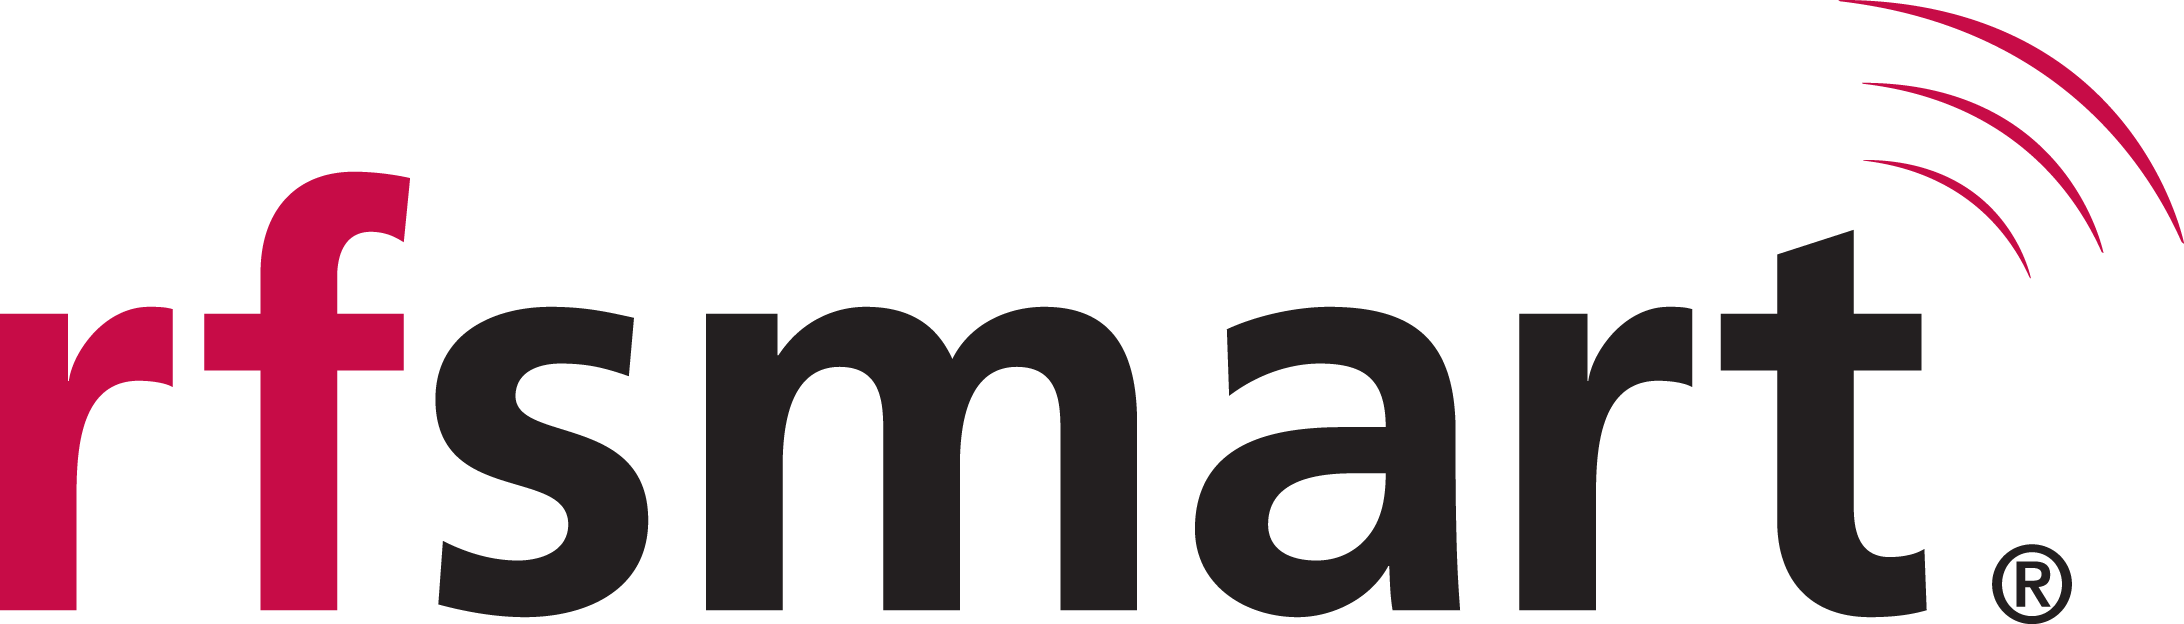 rfsmart logo